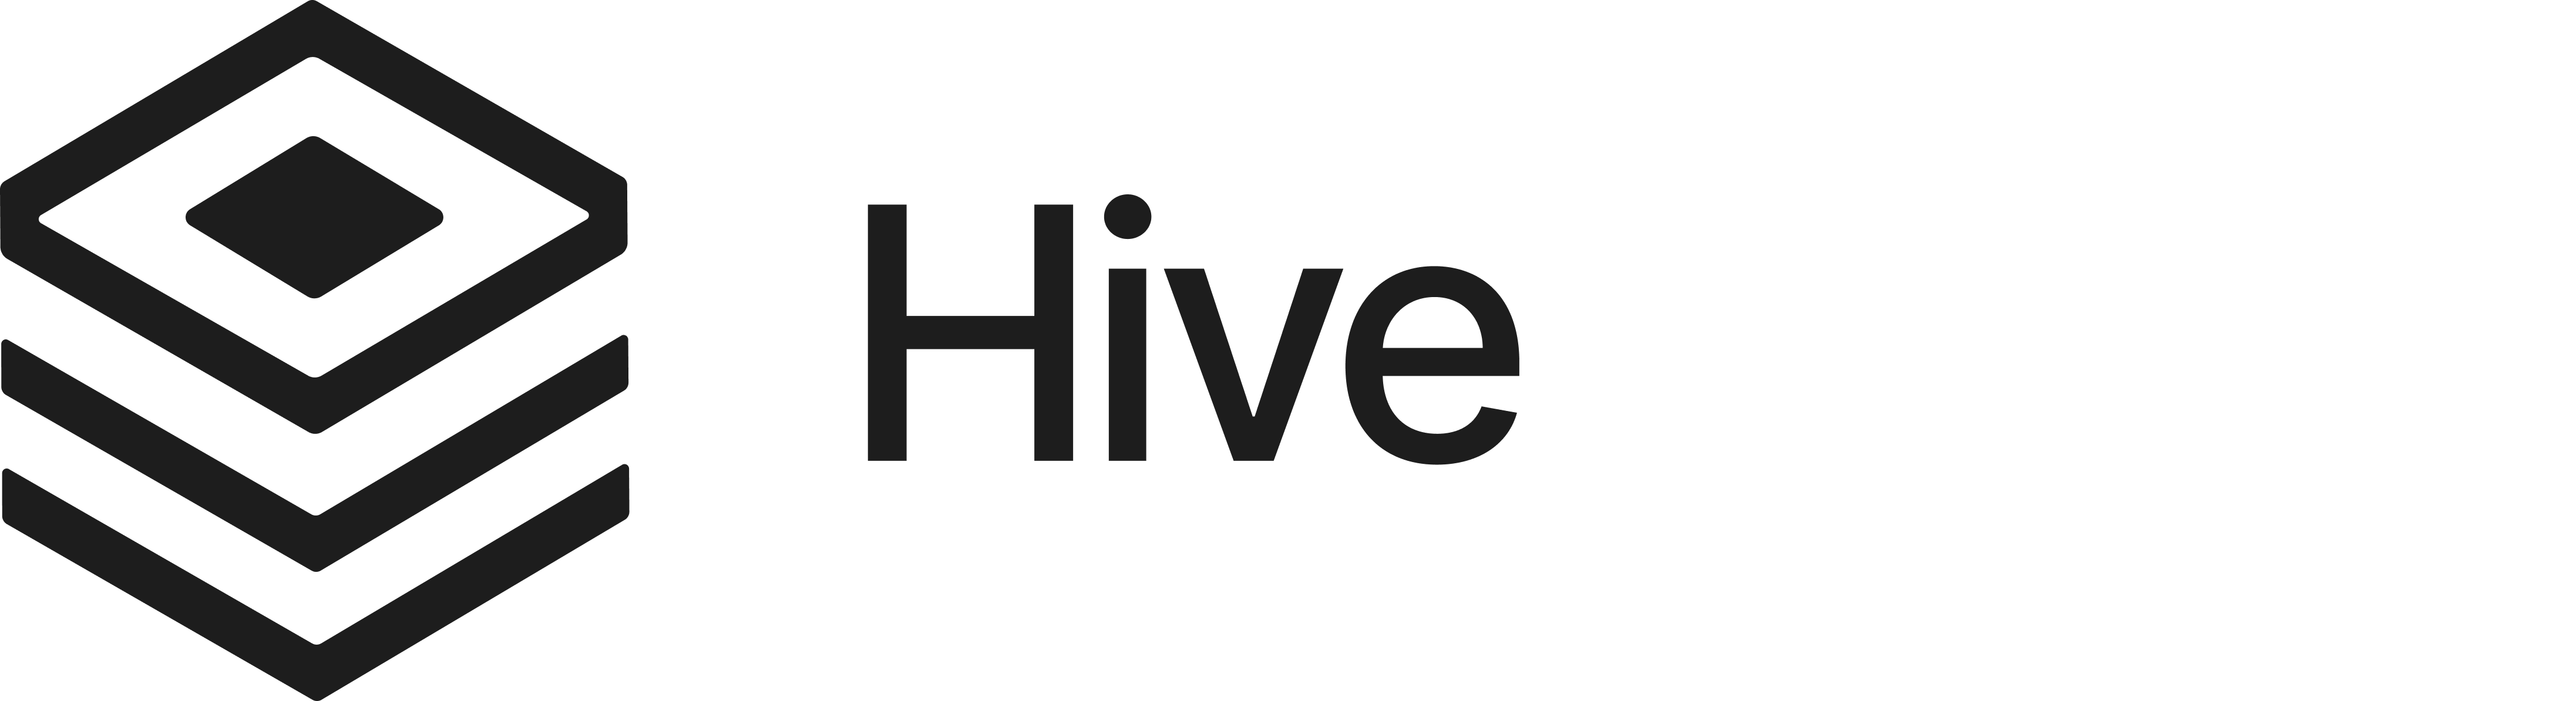 hive logo-1